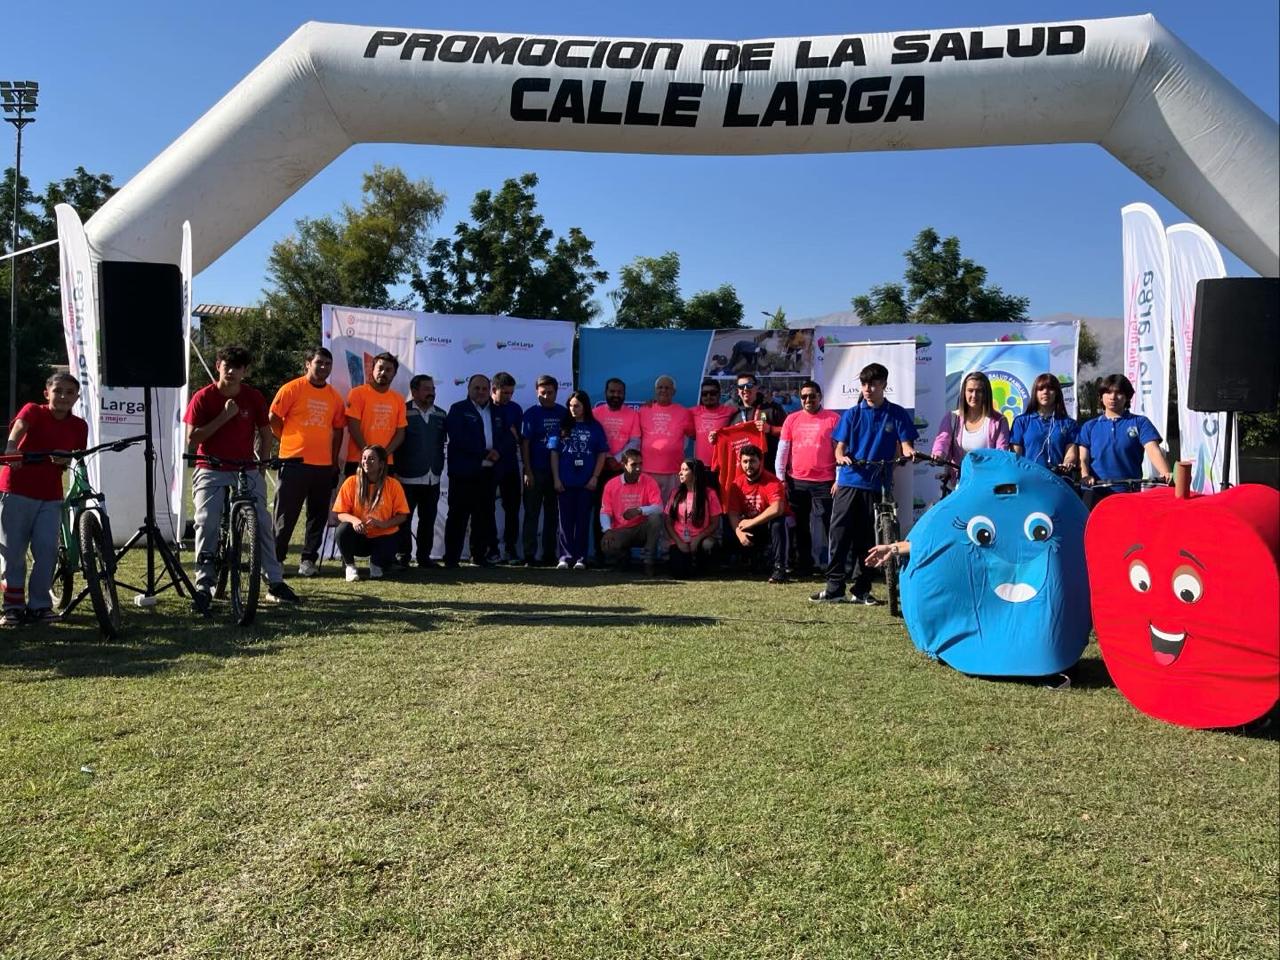 CALLE LARGA: Municipios de la Provincia de Los Andes lanzaron oficialmente la Cicletada Familiar Provincial “Sin Límites” en Calle Larga